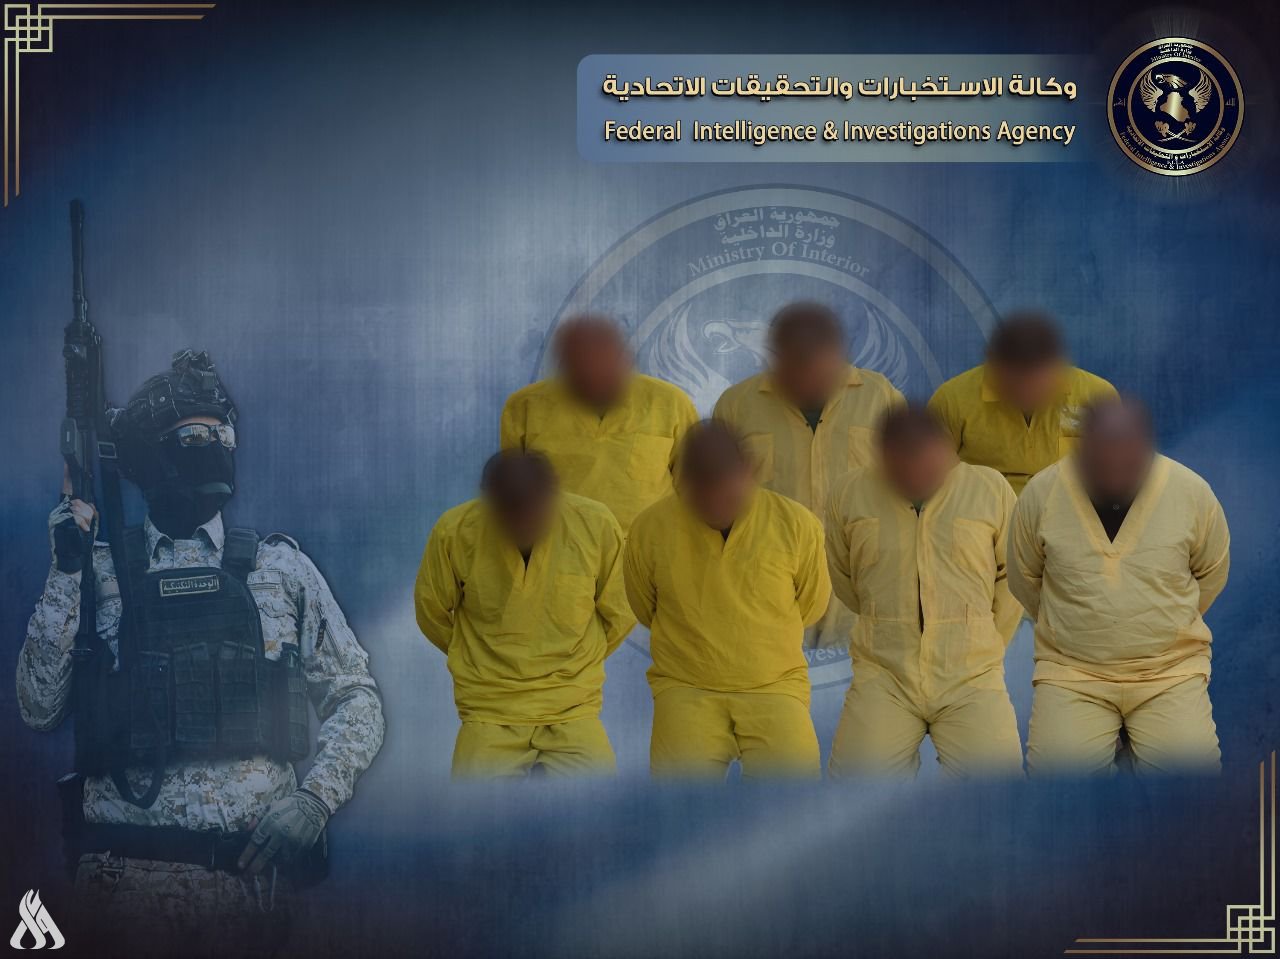 وكالة الاستخبارات تلقي القبض على 7 إرهابيين في نينوى